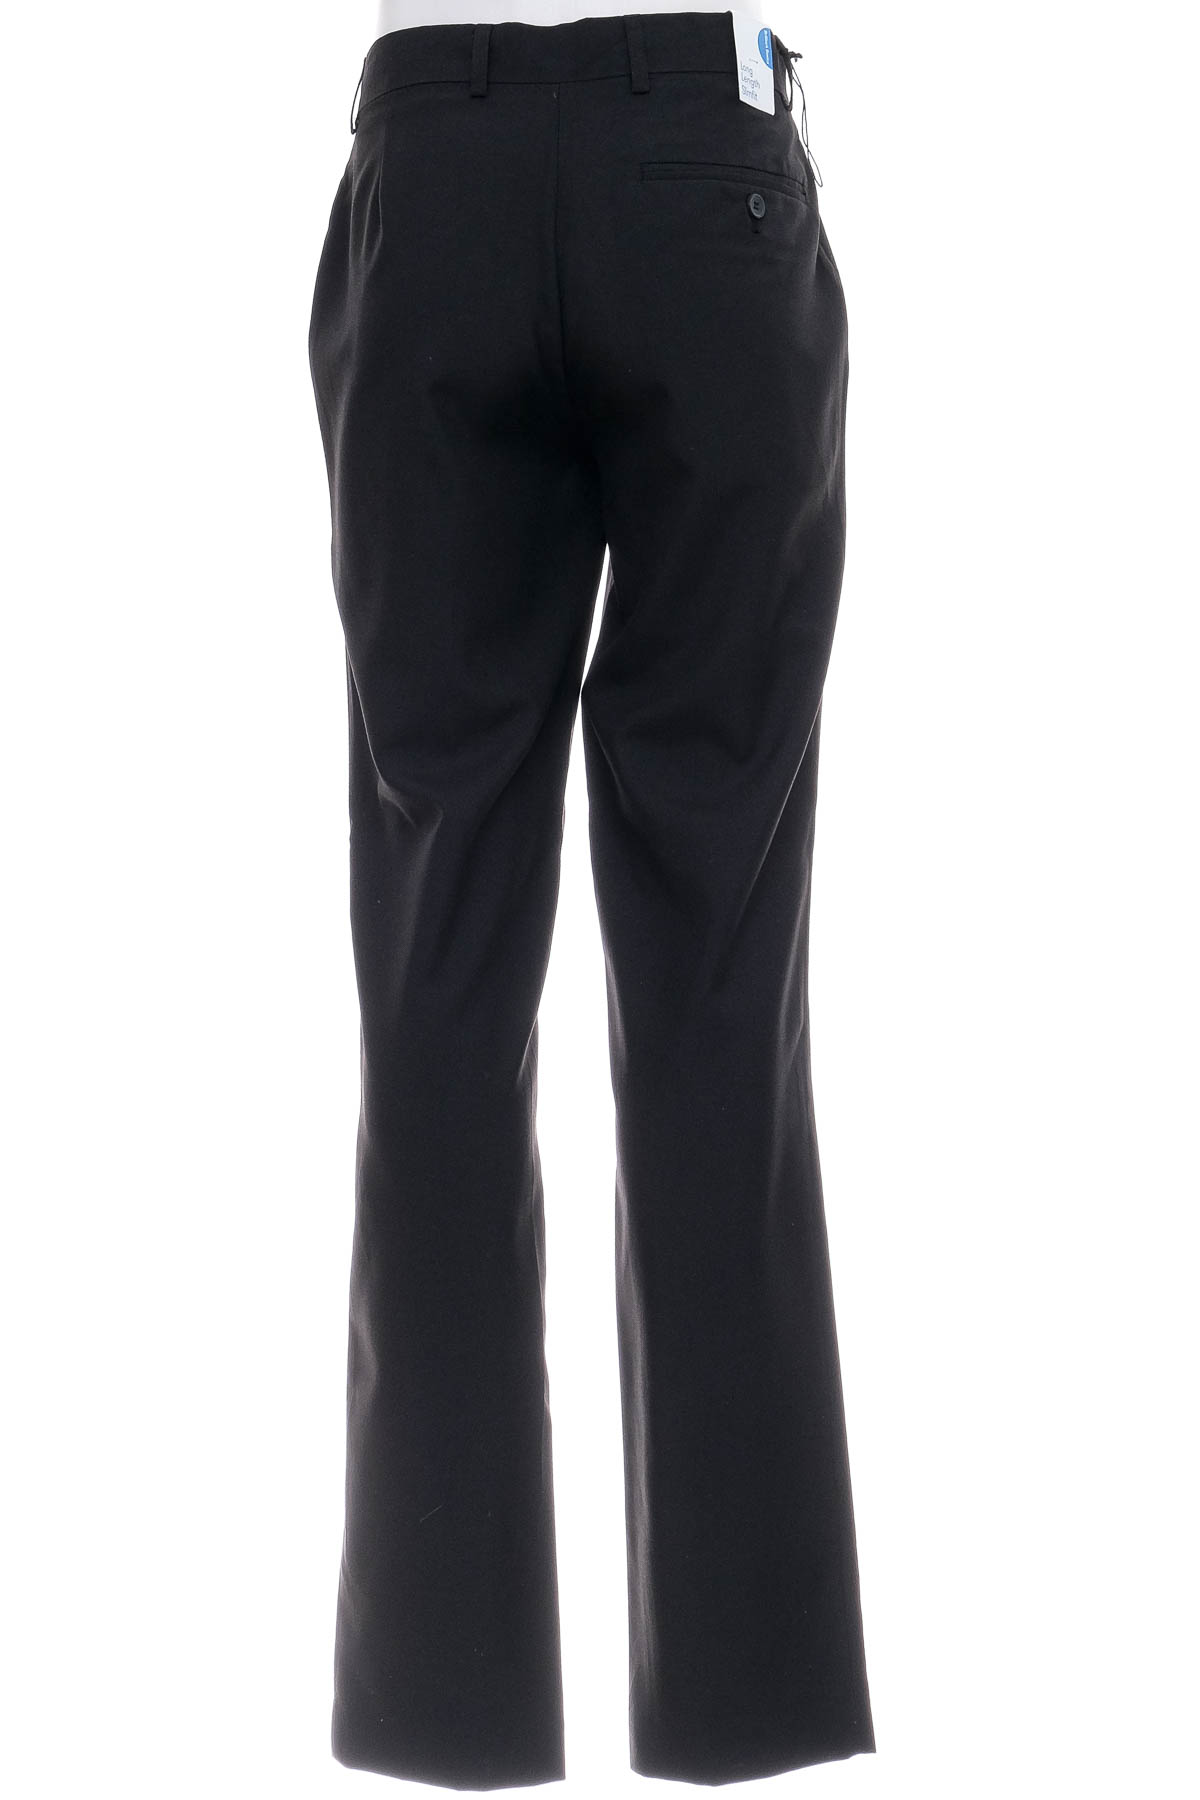 Pantalon pentru bărbați - Brilliant Basics - 1